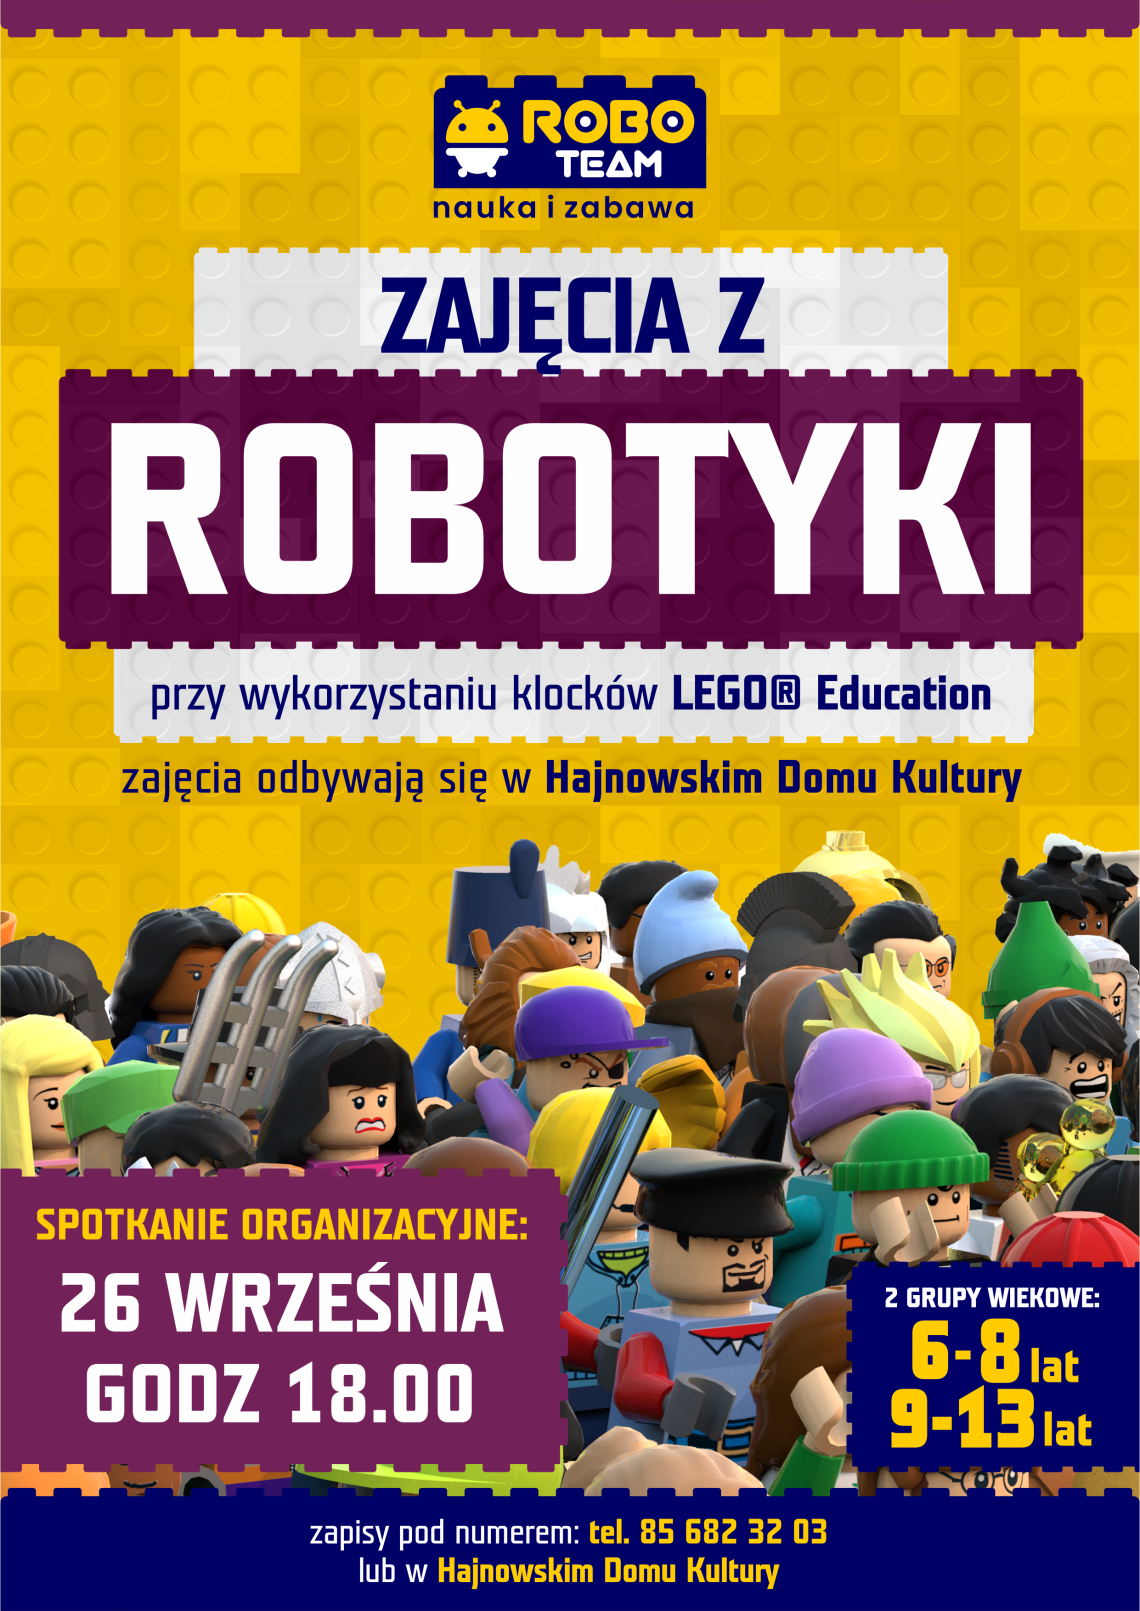 plakat, w tle figurki wykonane z klocków lego oraz informacje o zajęciach